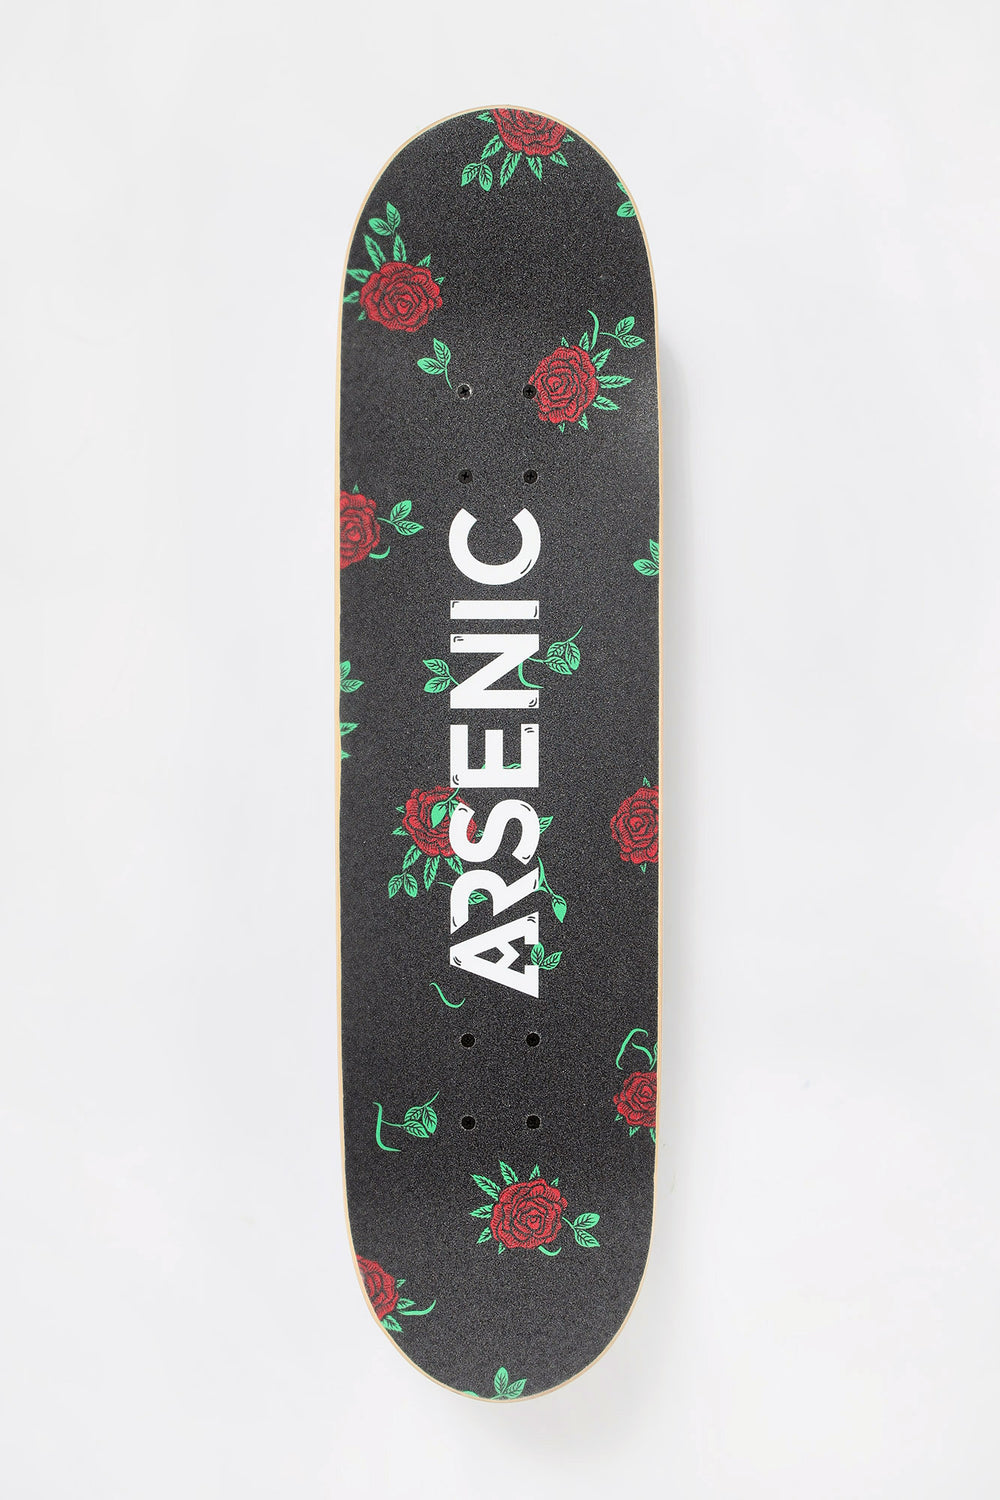 Arsenic Skulls & Roses Skateboard 8